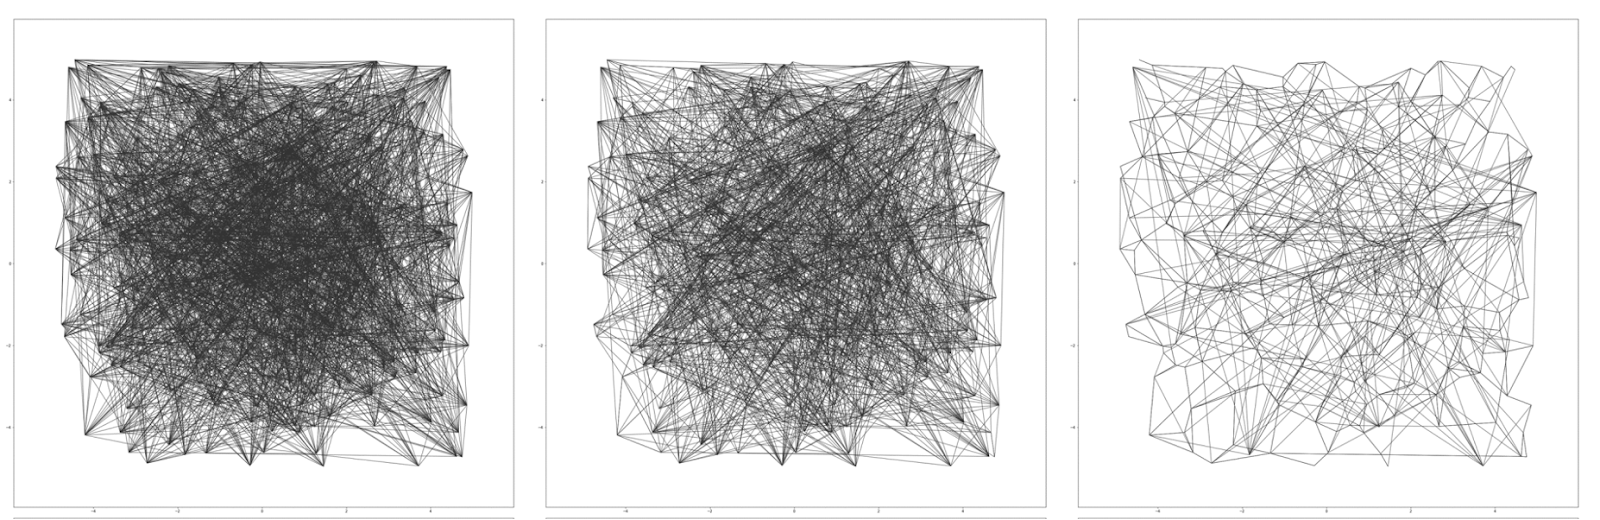 Визуализация процесса построения графа в DiskANN на 200 двумерных точках